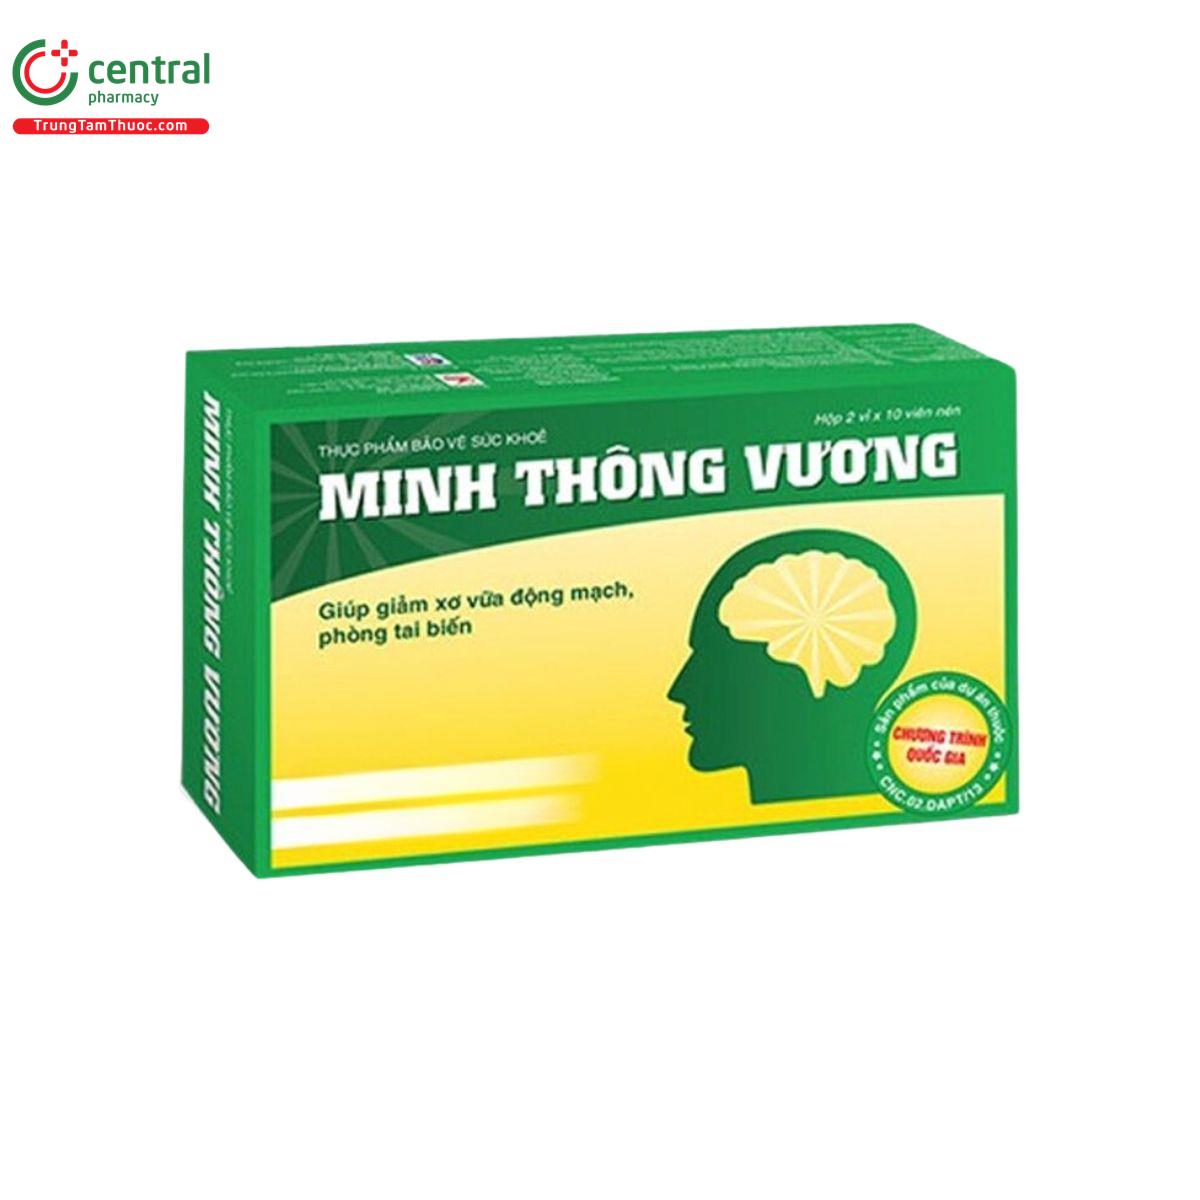 minh thong vuong 2 T8823